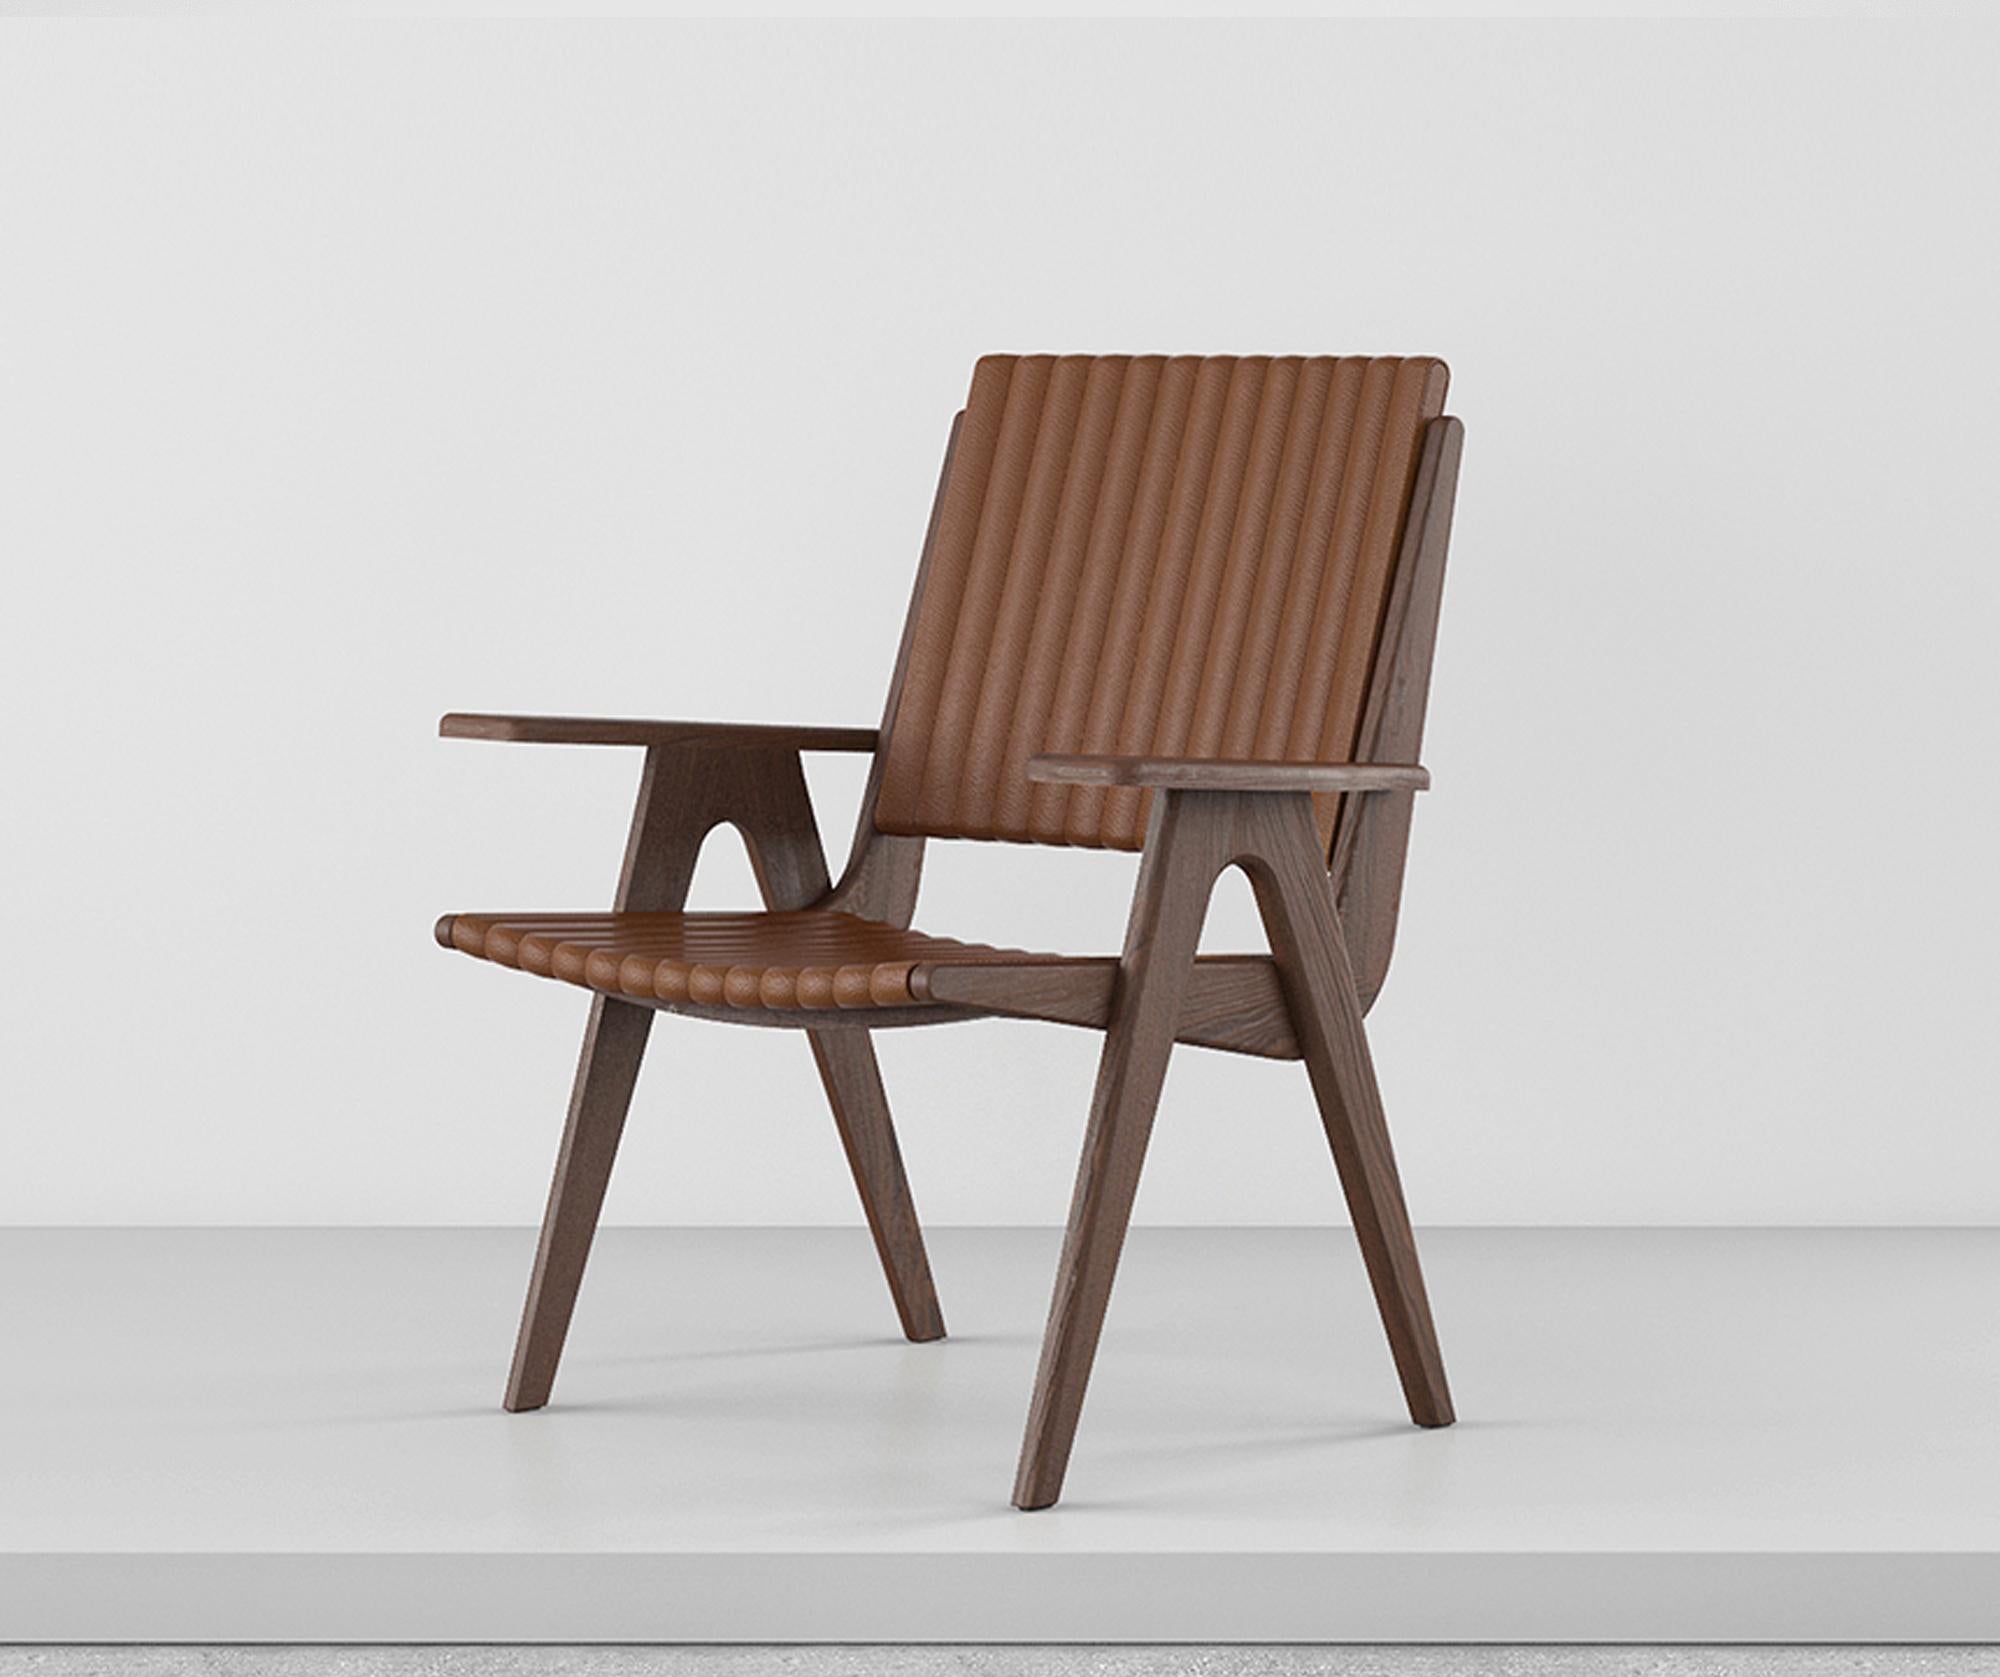 Slice est une réinterprétation contemporaine des chaises d'extérieur en bois, qui convient également très bien à l'intérieur. La chaise est également disponible avec une assise et un dossier rembourrés, ainsi qu'avec un modèle sans accoudoirs.